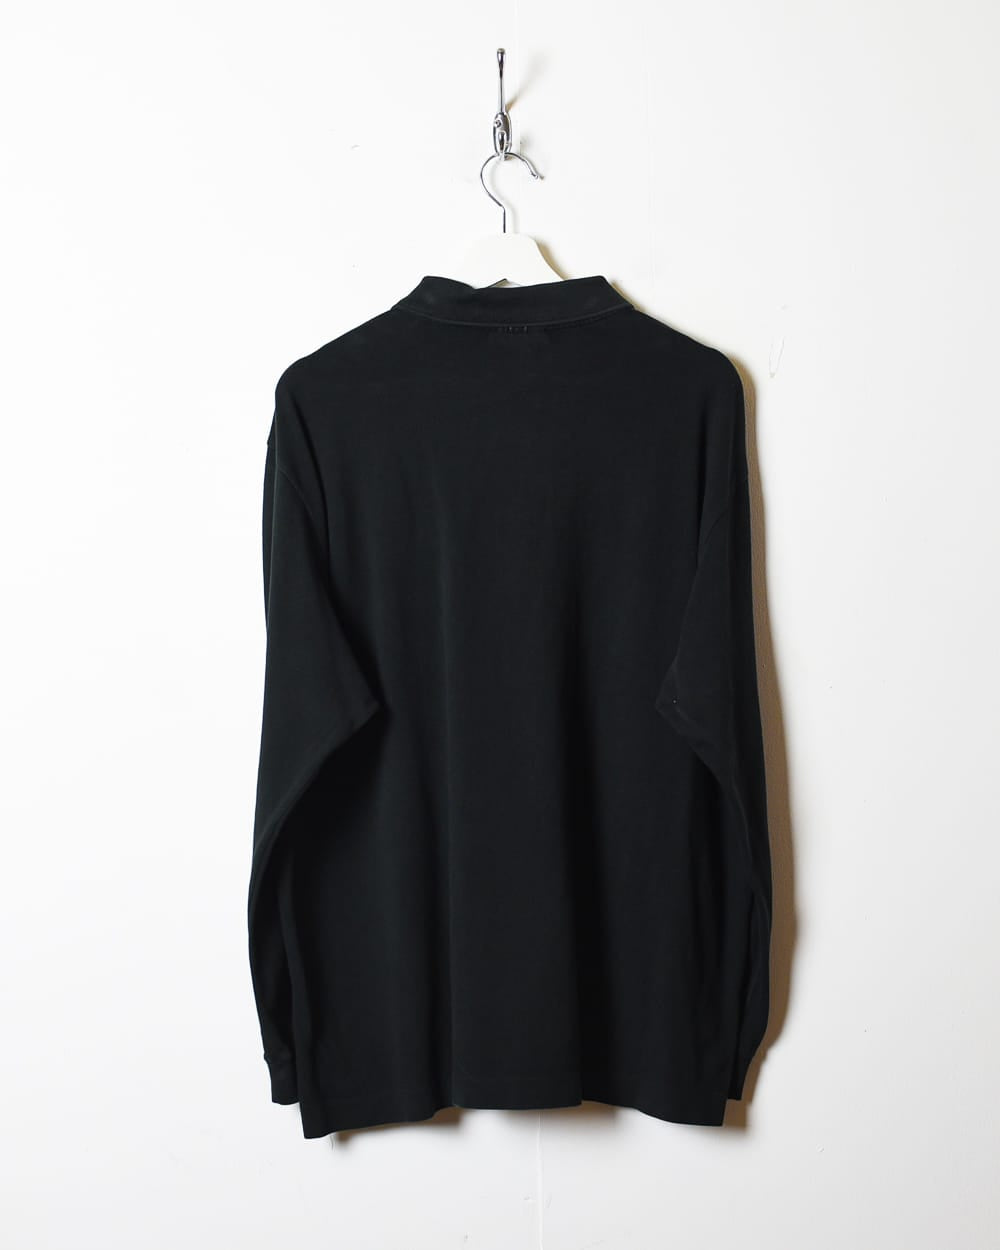 Black Chemise Lacoste Long Sleeved Polo Shirt - X-Large